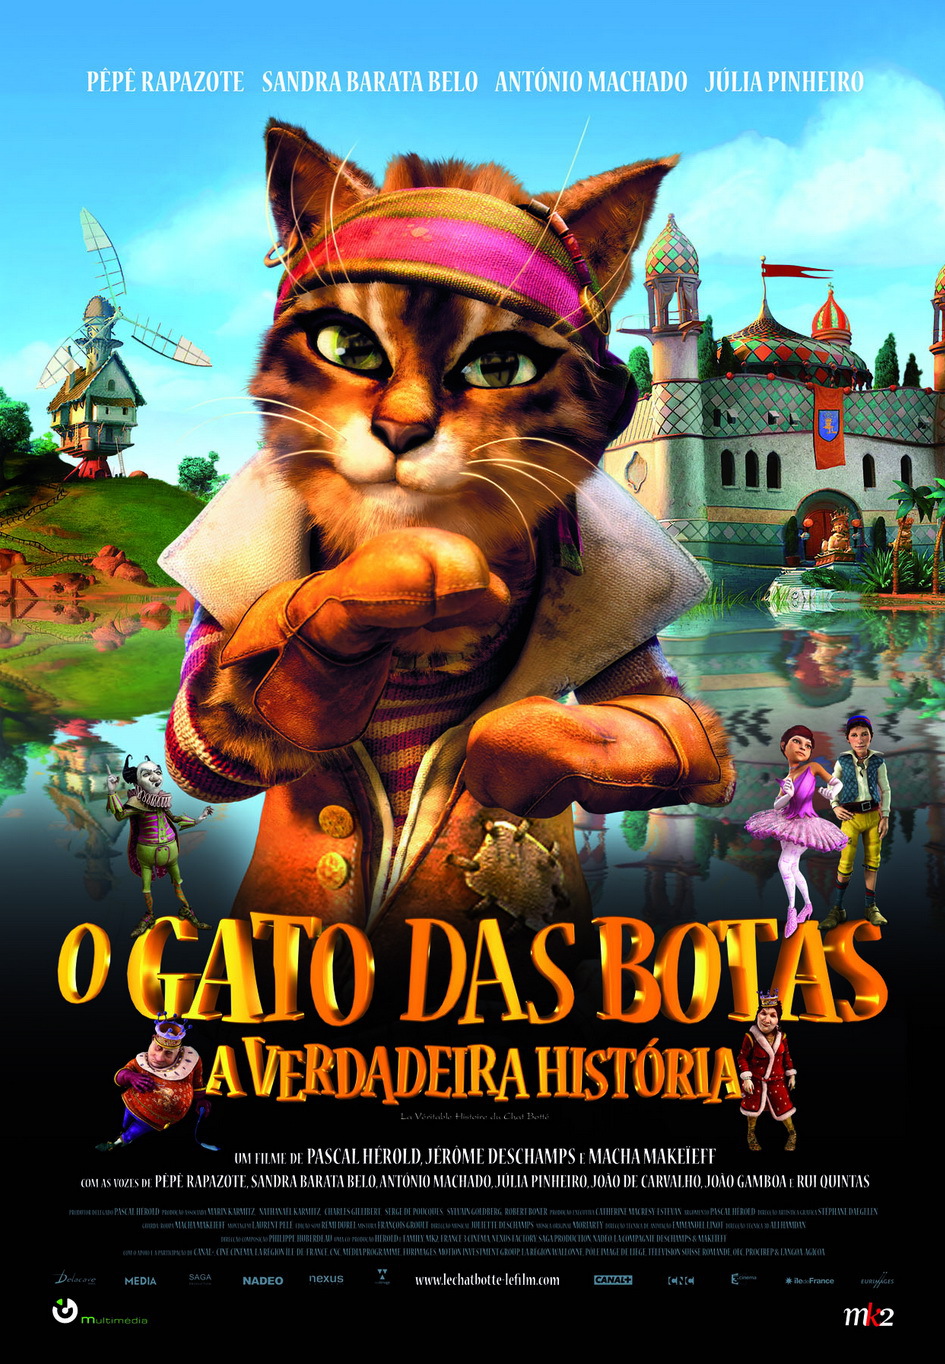 Gato de Botas (filme) - Desciclopédia